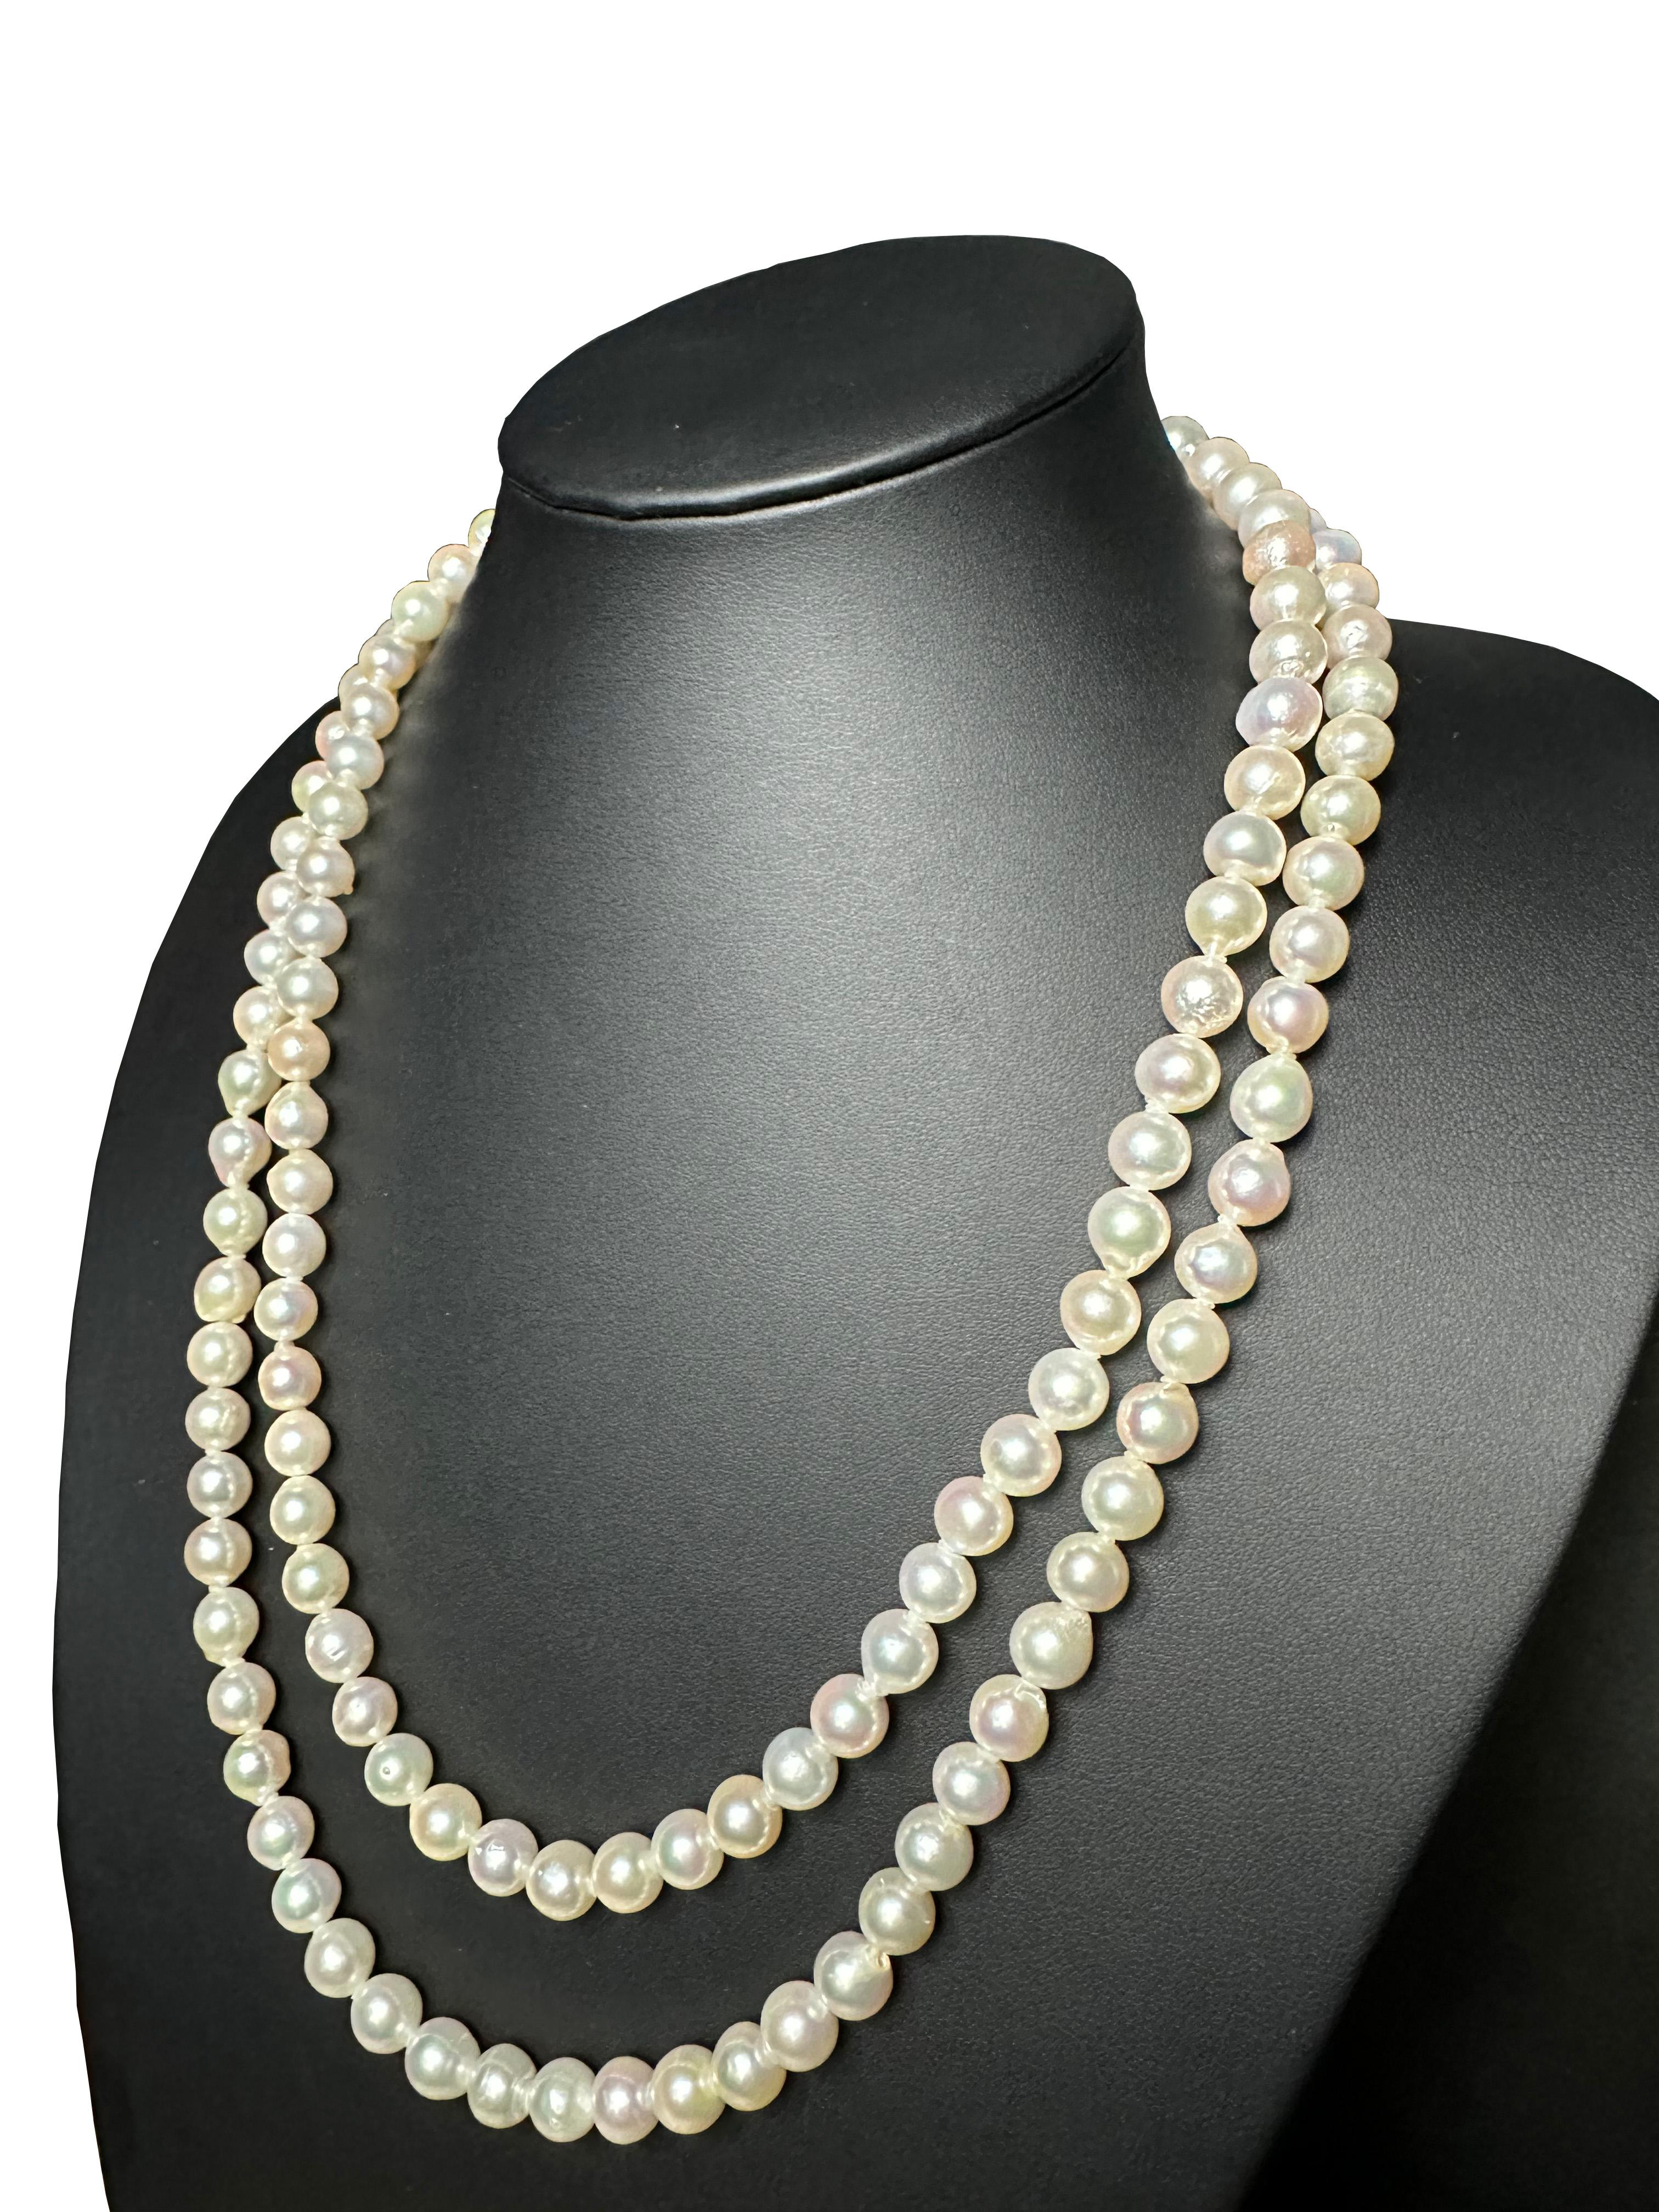 Créateur : IRIS PARURE
Ferme perlière : Ehime, Uwajima, JAPON
Caractéristiques : non coloré et non blanchi, BENI AKOYA®.
Taille de la perle : 8.5mm-9.00mm
Nombre de perles : 134

 Depuis sa création en 1953, IRIS PARURE fabrique des bijoux en perles